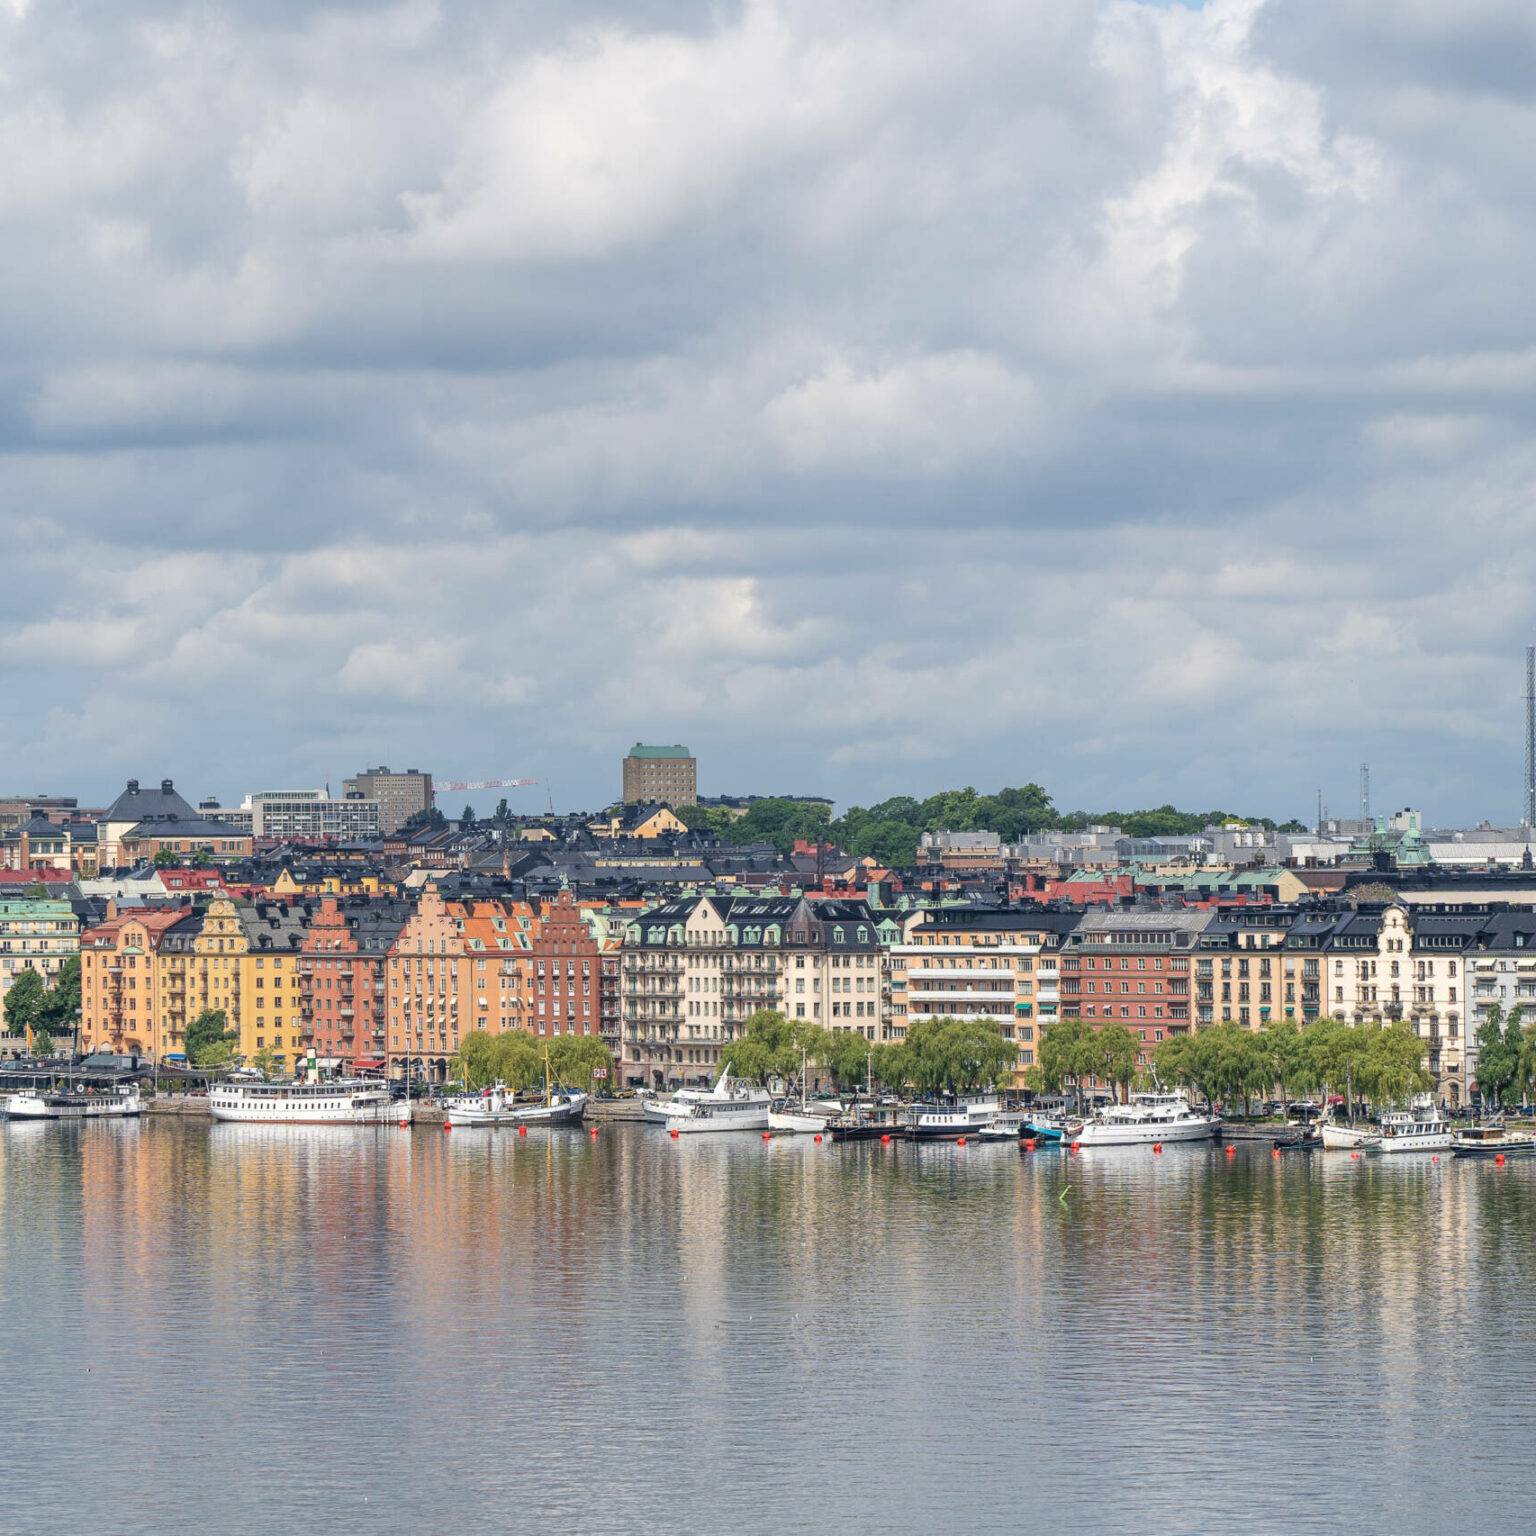 Einen tollen Ausblick auf die Stockholmer Innenstadt mit Gamla Stan und Riddarfjärden können Touristen vom Monteliusvägen aus erhaschen.